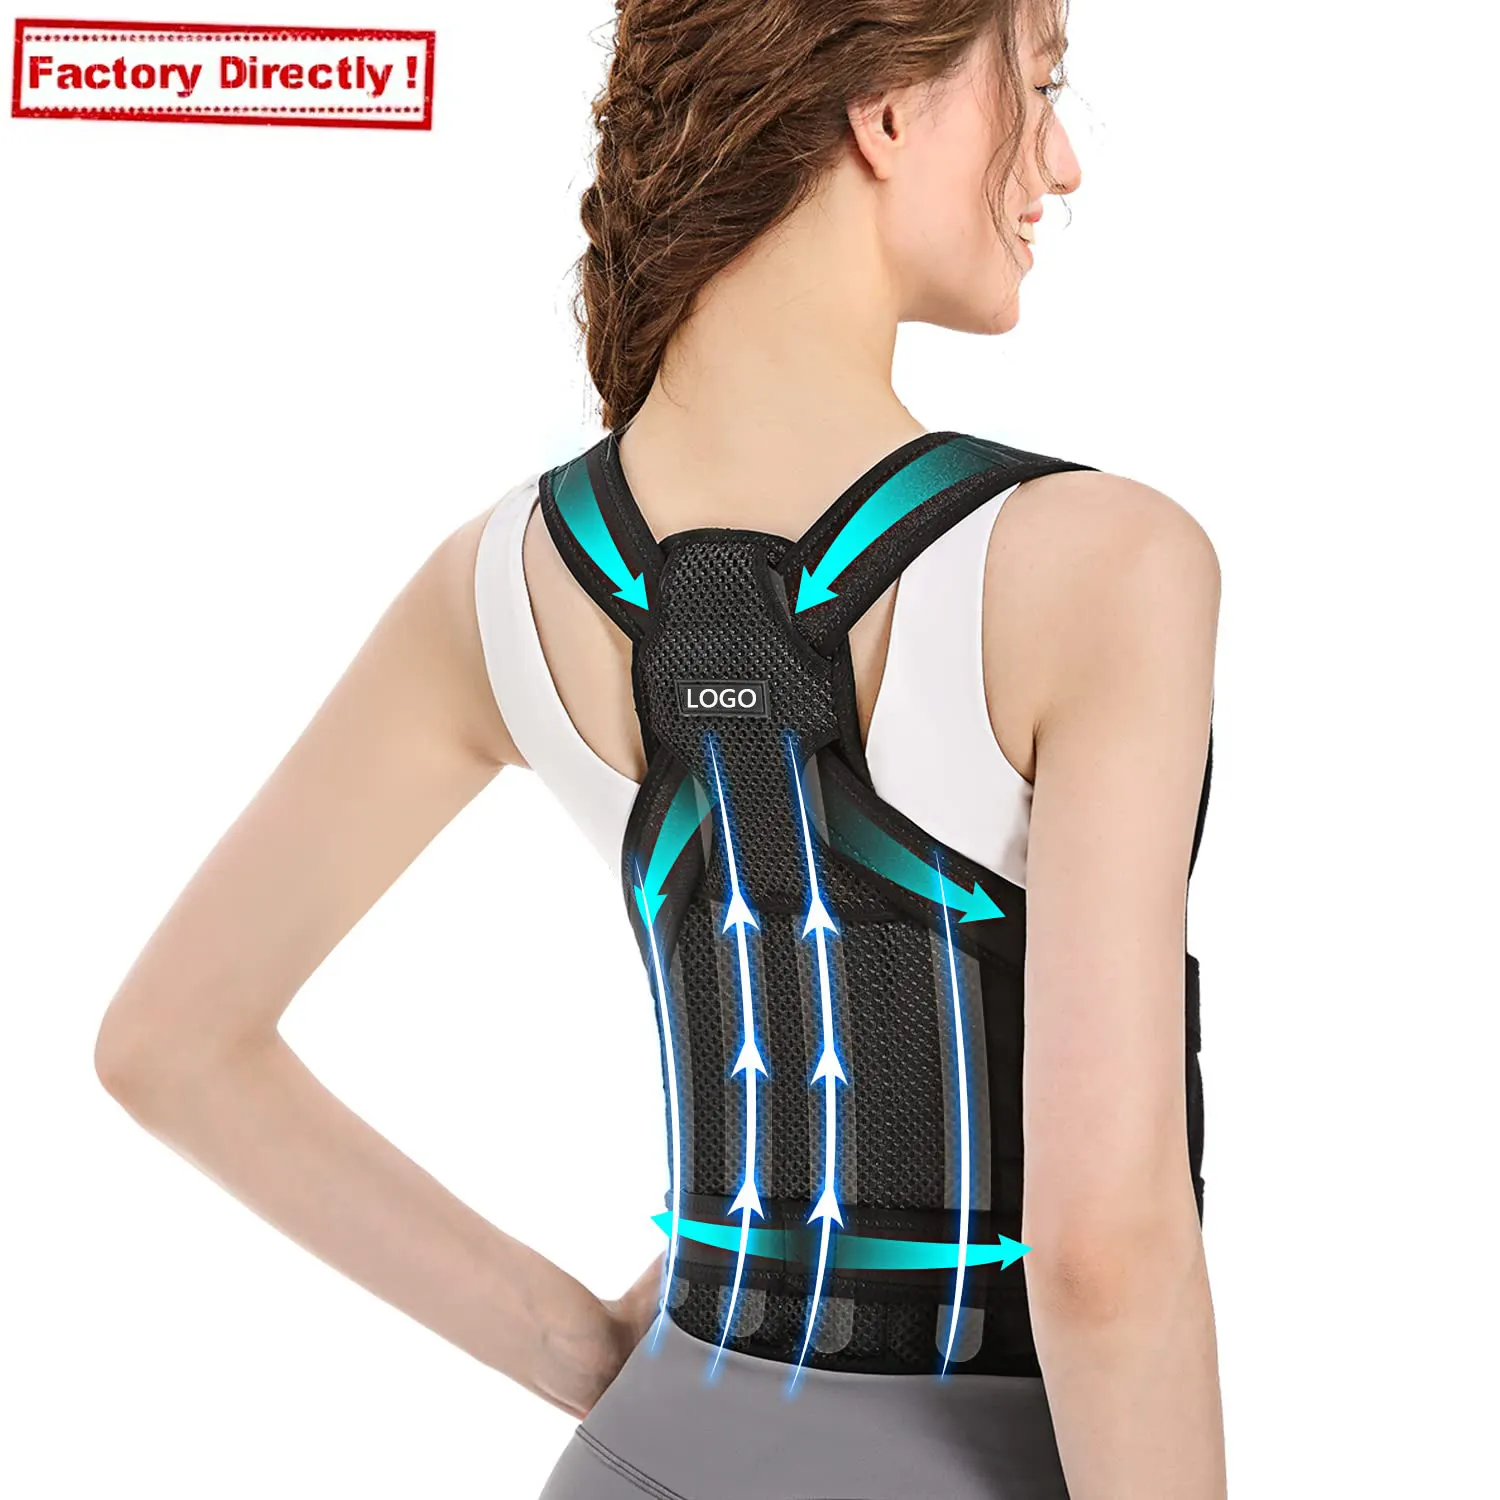 Corretor de postura Back straightener Strap Suporte poster corrector Brace Shoulder Posture Corrector Belt For Men And Women